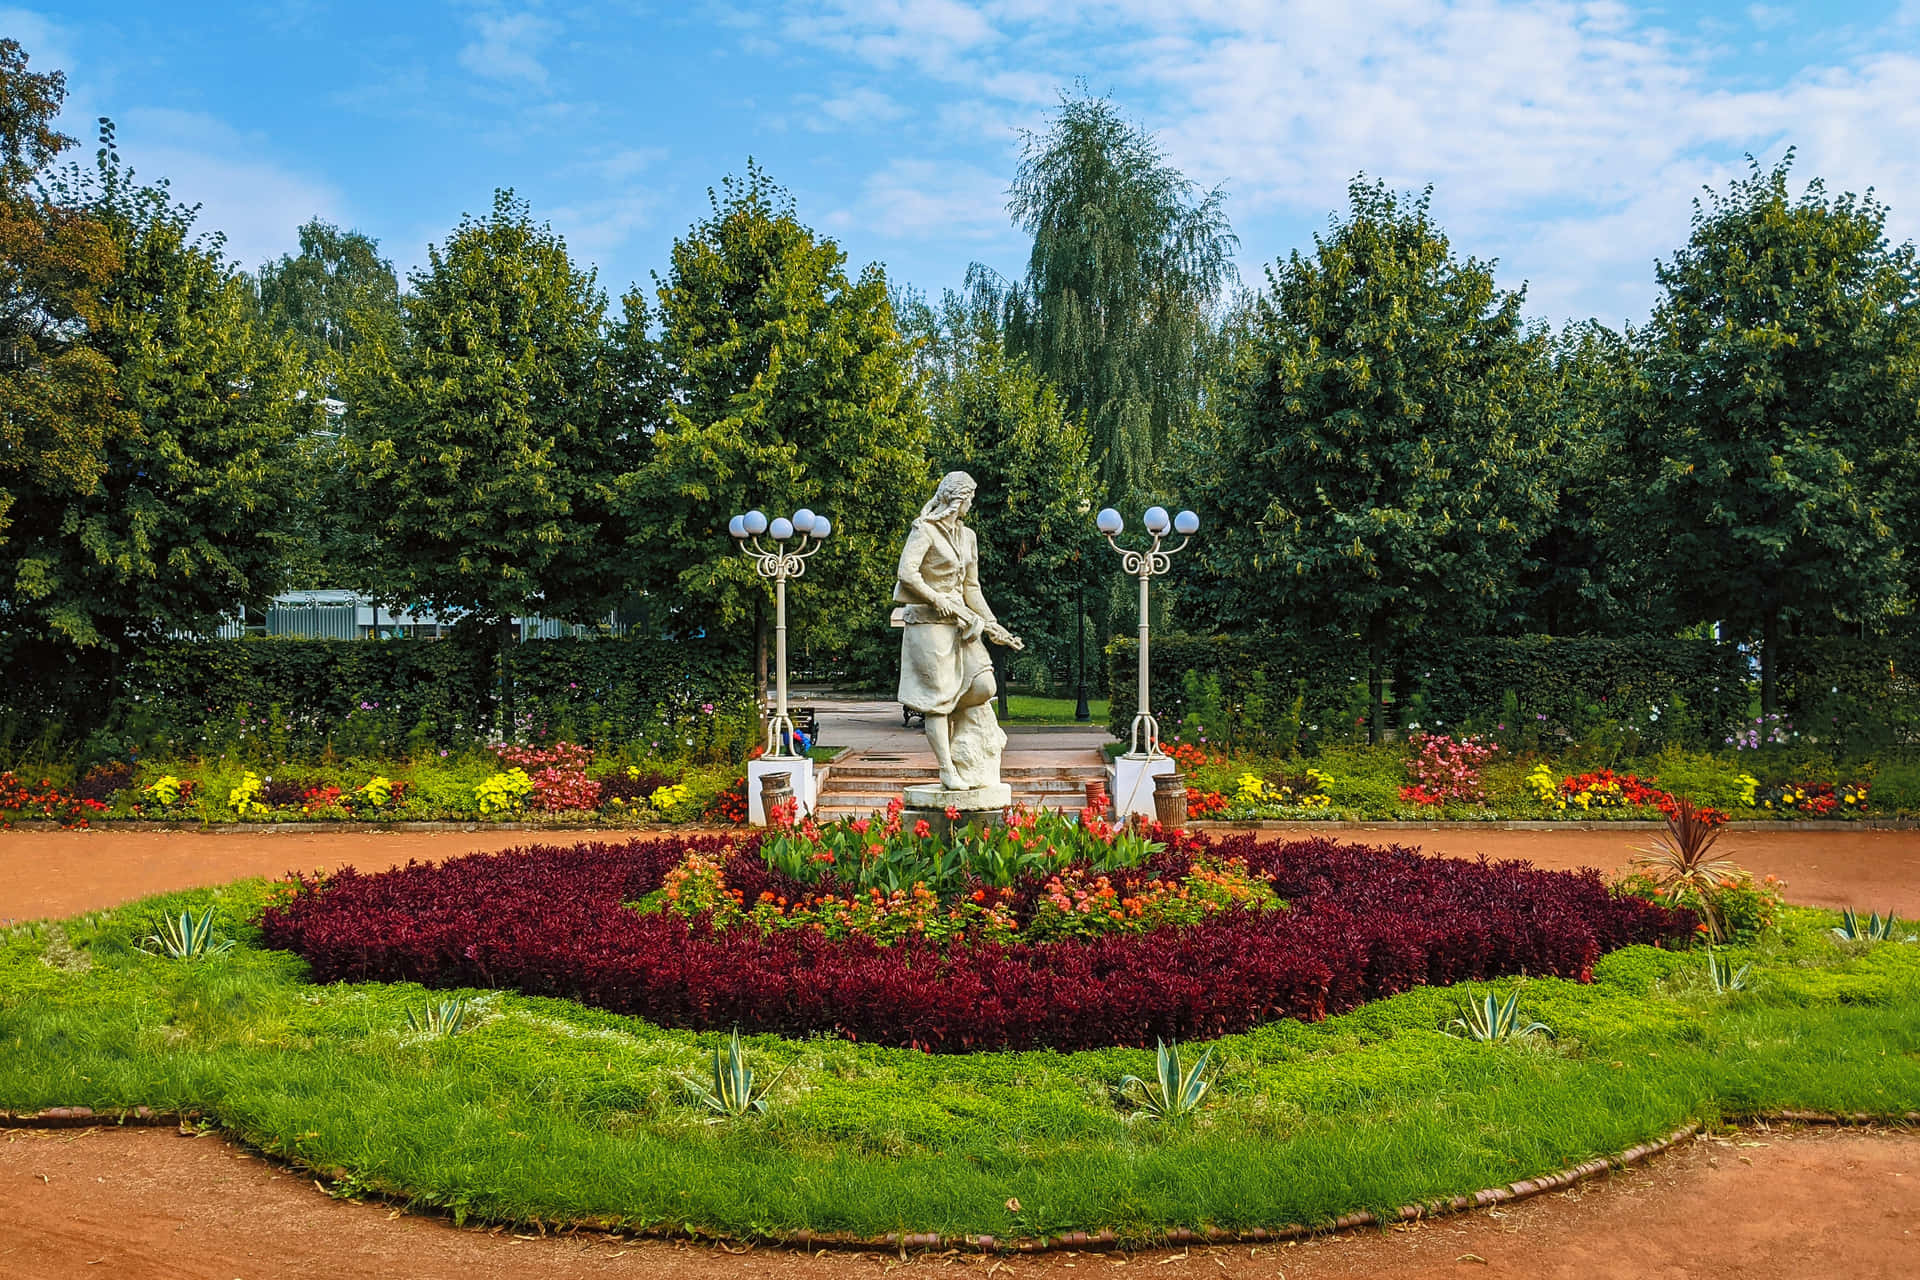 a circular garden with a statue